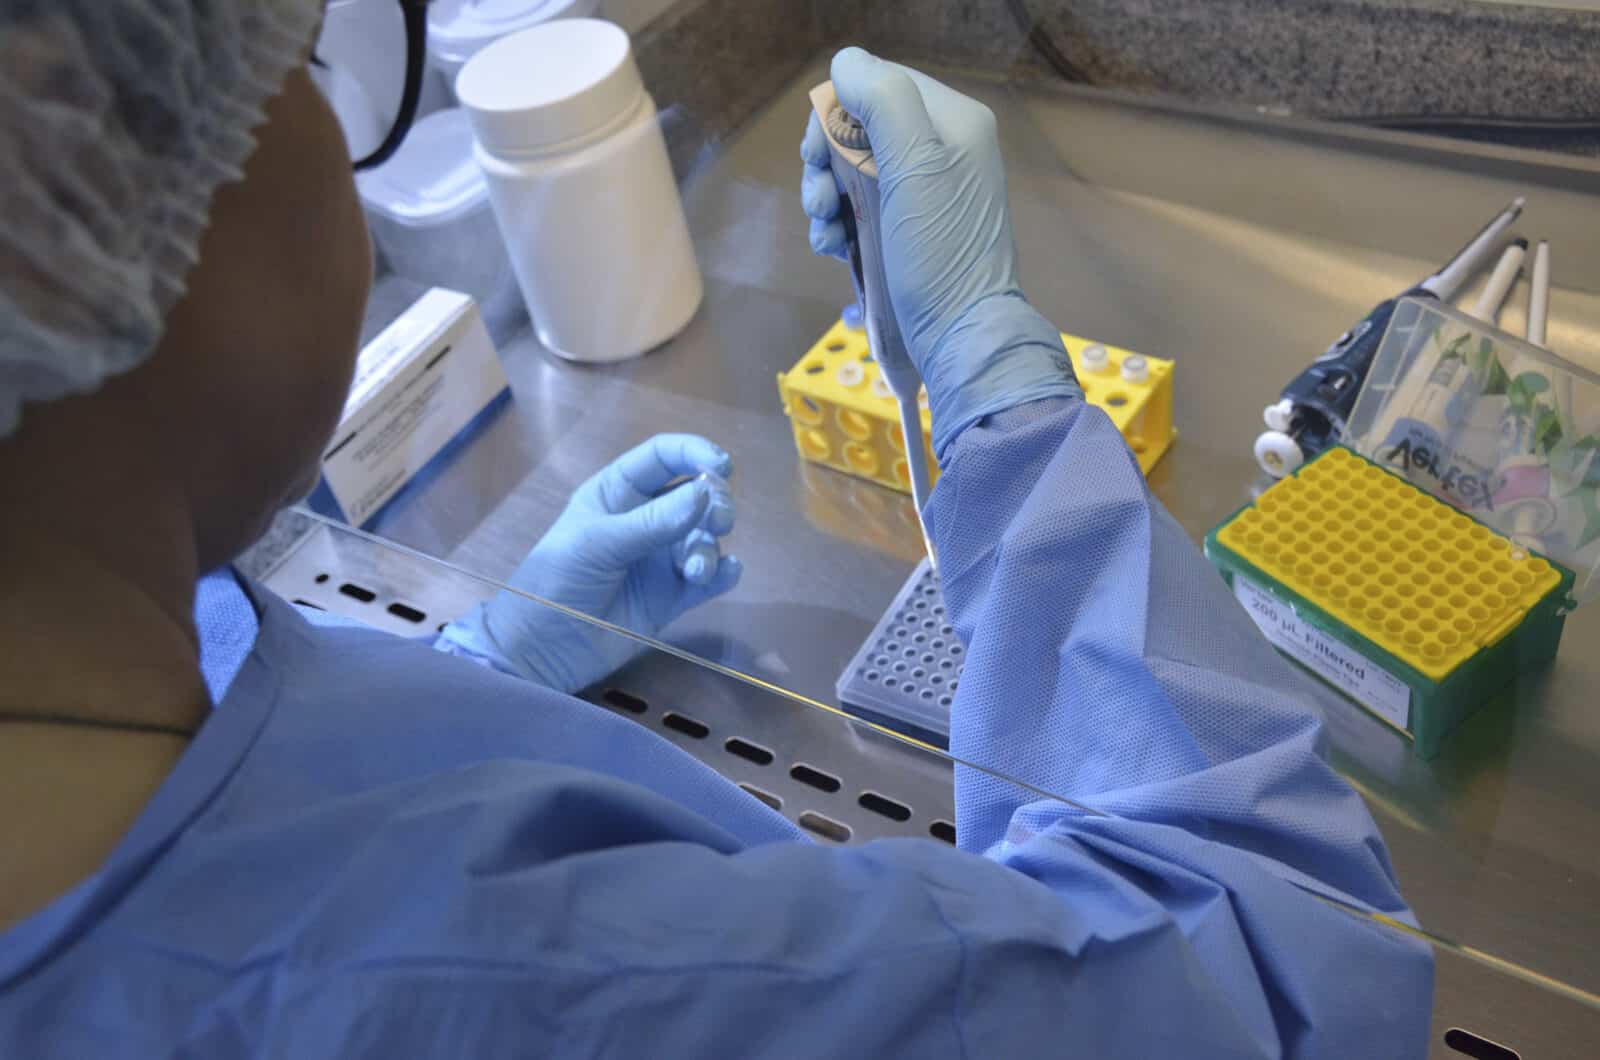 O Laboratório Central de Saúde Pública de Santa Catarina (LACEN) está realizando exames para identificação do novo coronavírus (COVID-19) Por: Robson Valverde / SES-SC